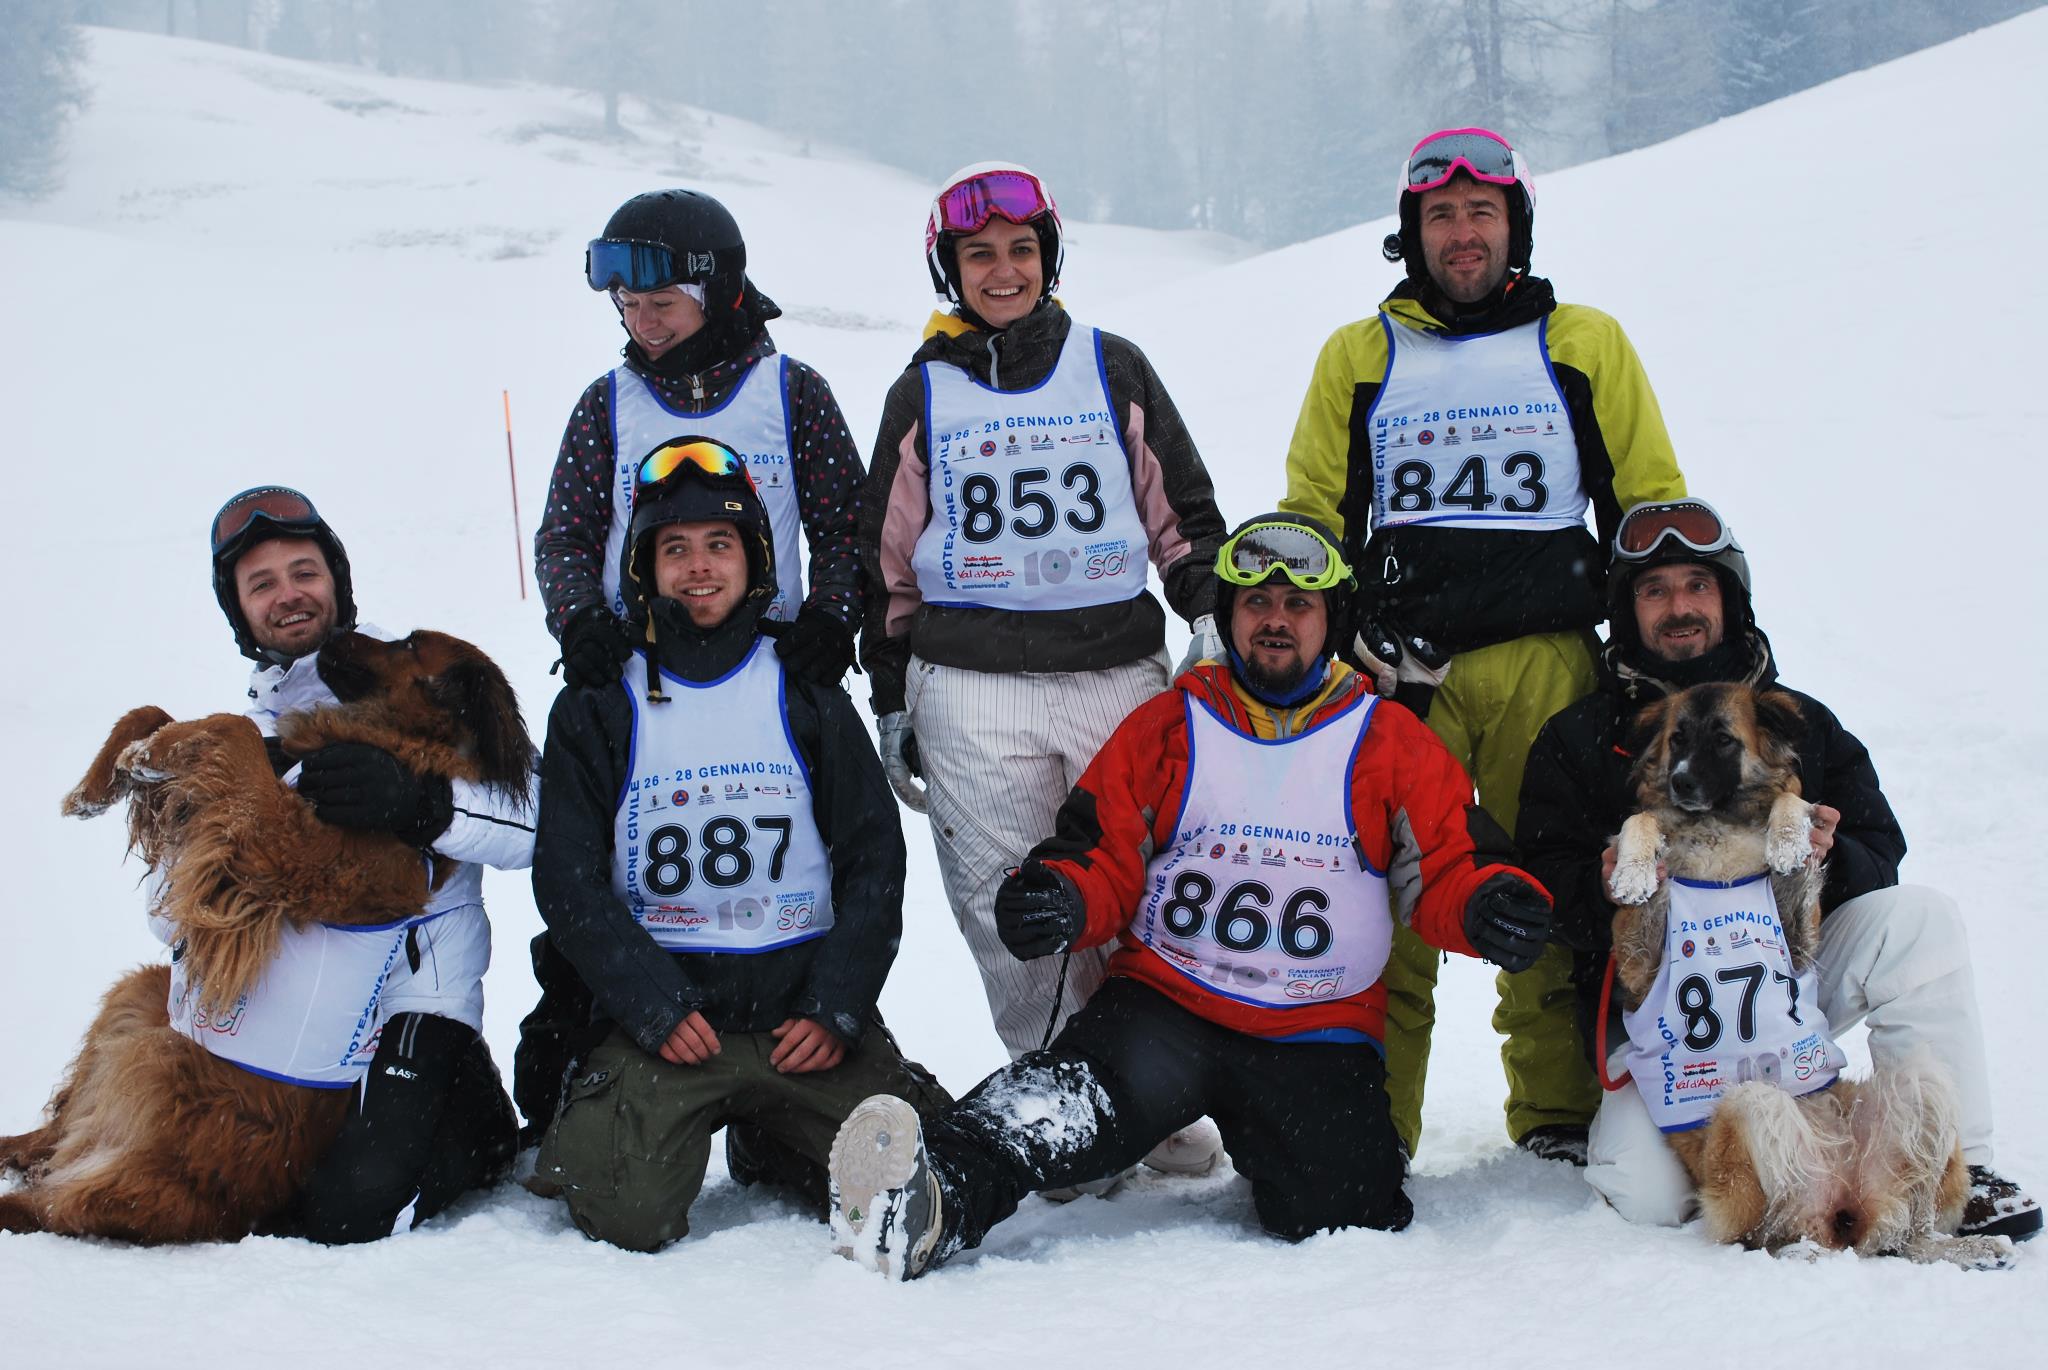 Gruppo Ski volontari VAB con mascotte